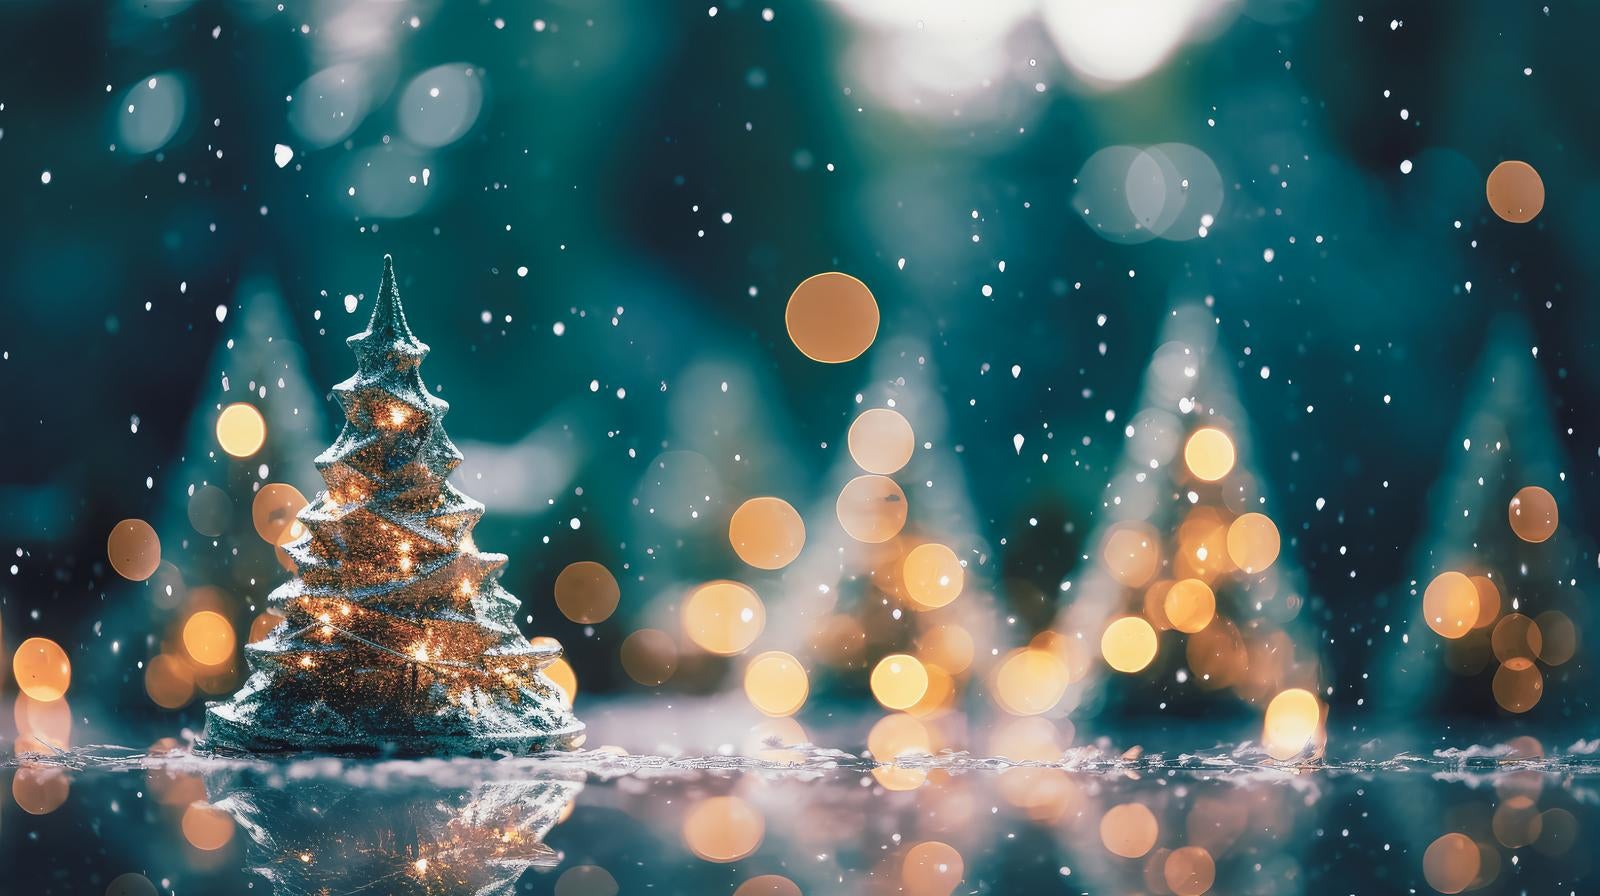 「クリスマスツリーのオブジェとキラキラ光る雪」の写真